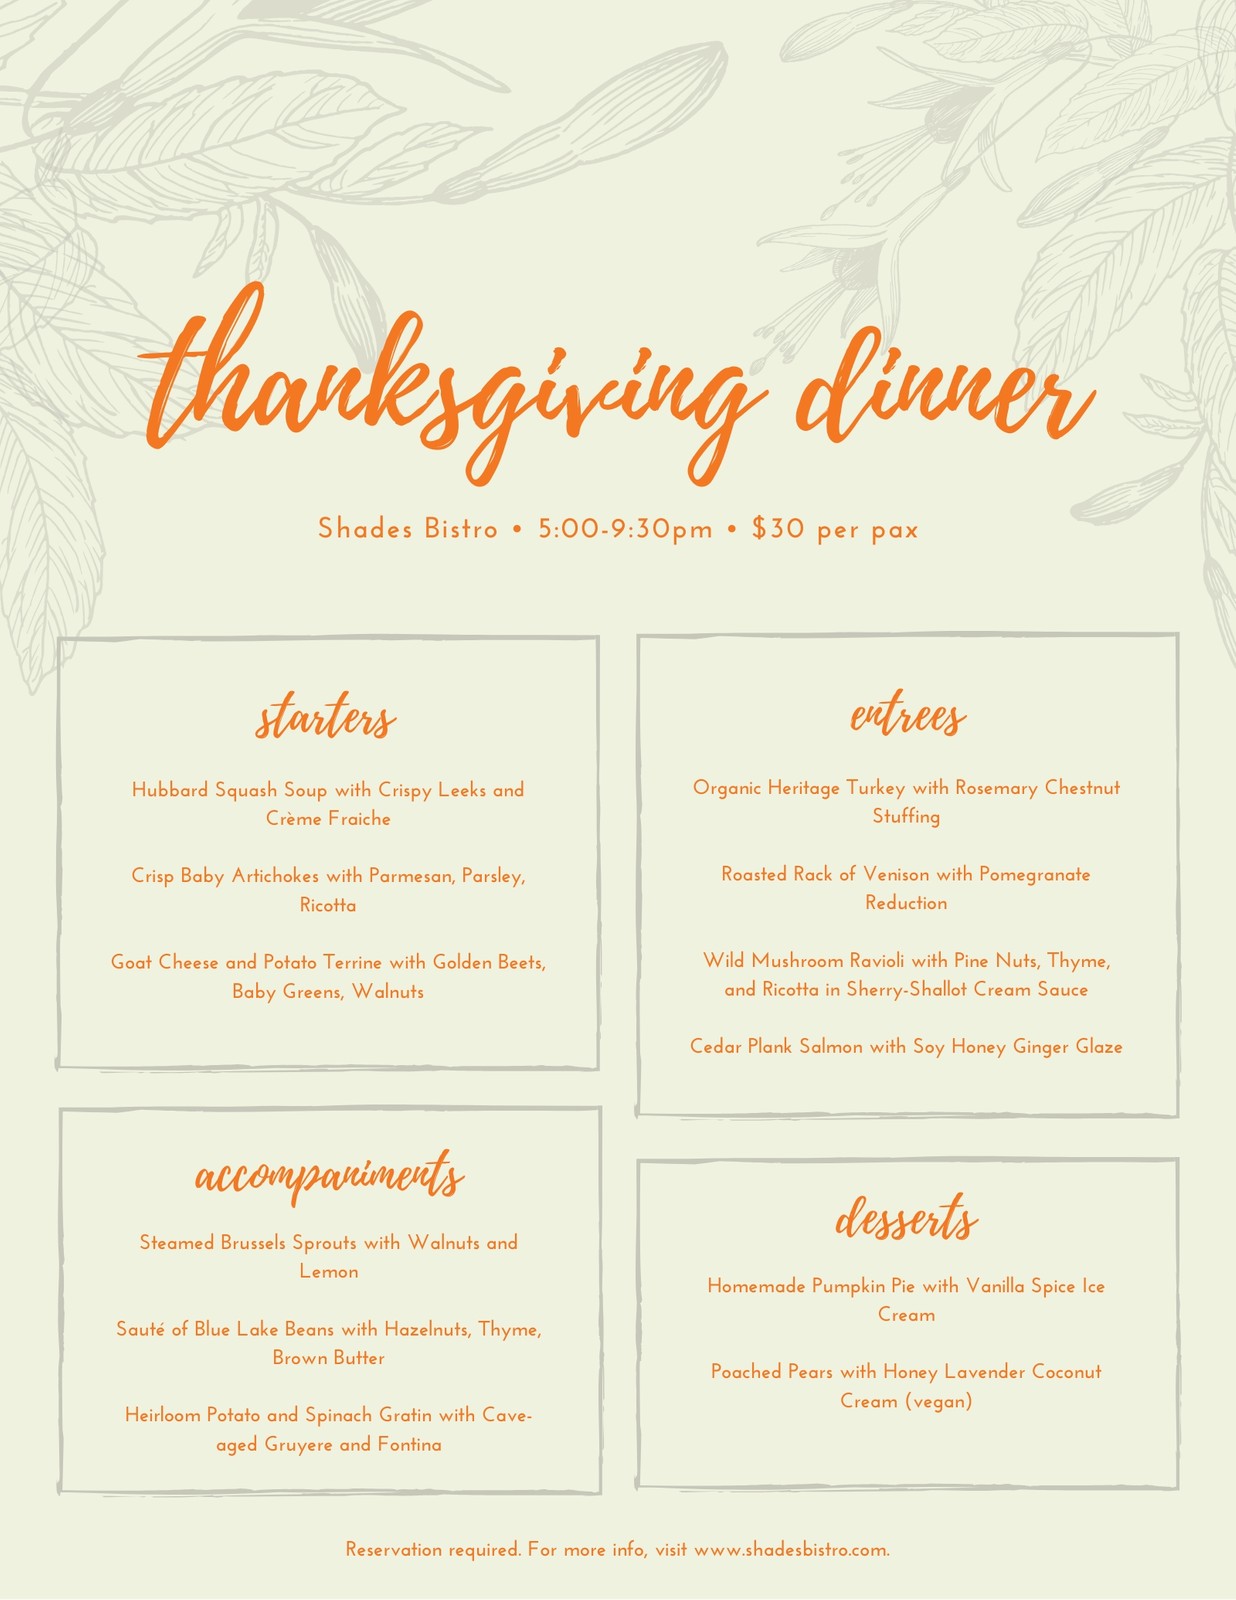 Free printable, customizable Thanksgiving menu templates  Canva For Menu Template Free Printable